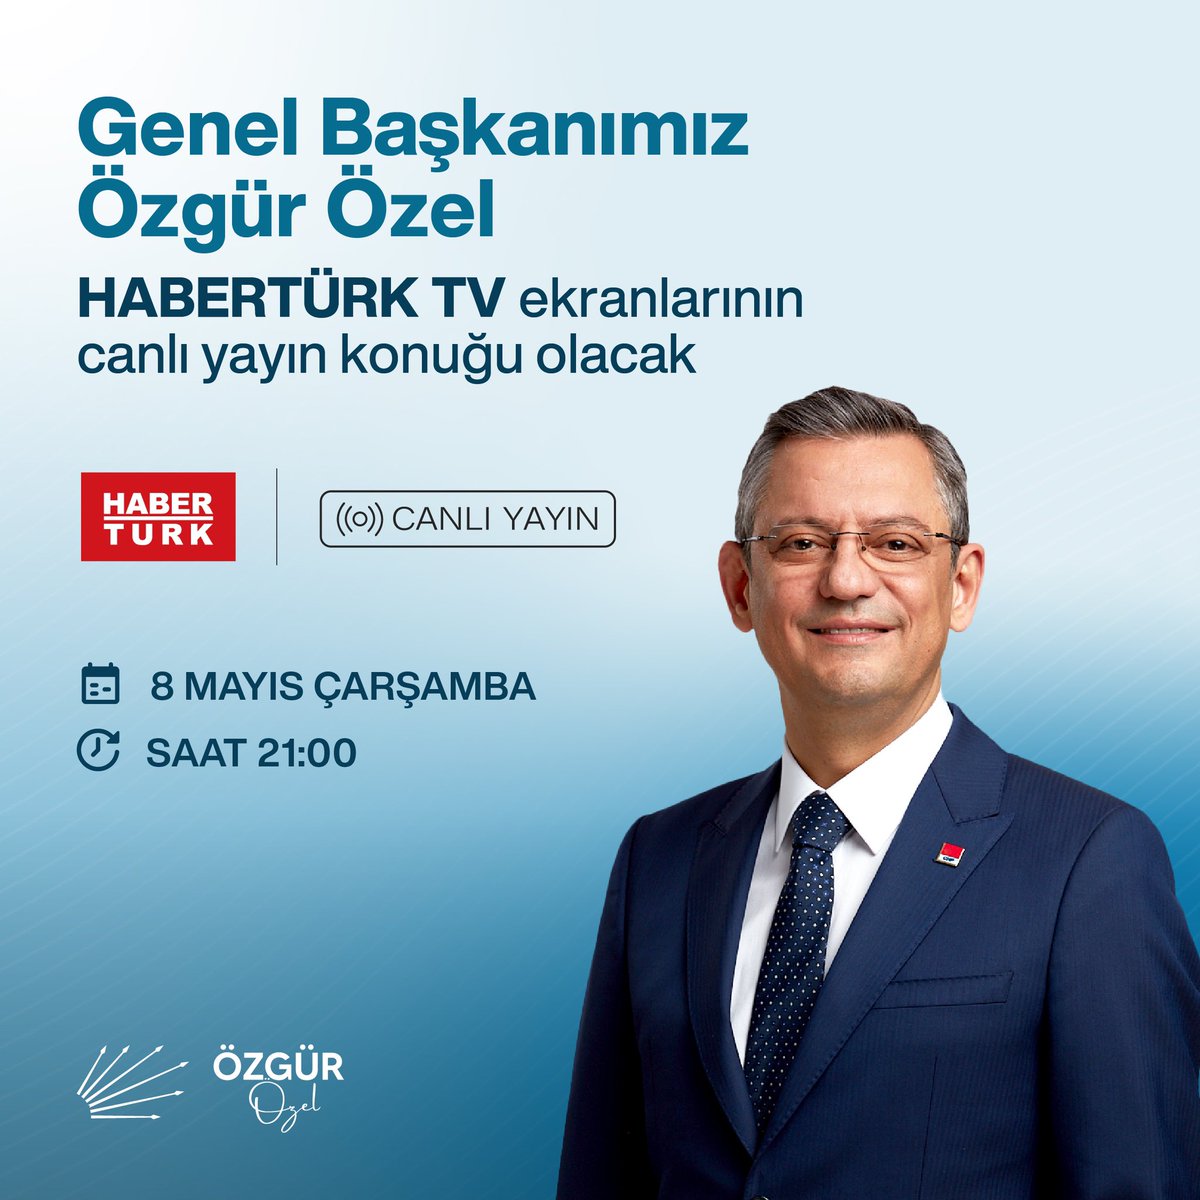 Genel Başkanımız Özgür Özel, bu akşam saat 21.00’de HaberTürk TV'de gazetecilerin sorularını yanıtlayacak.